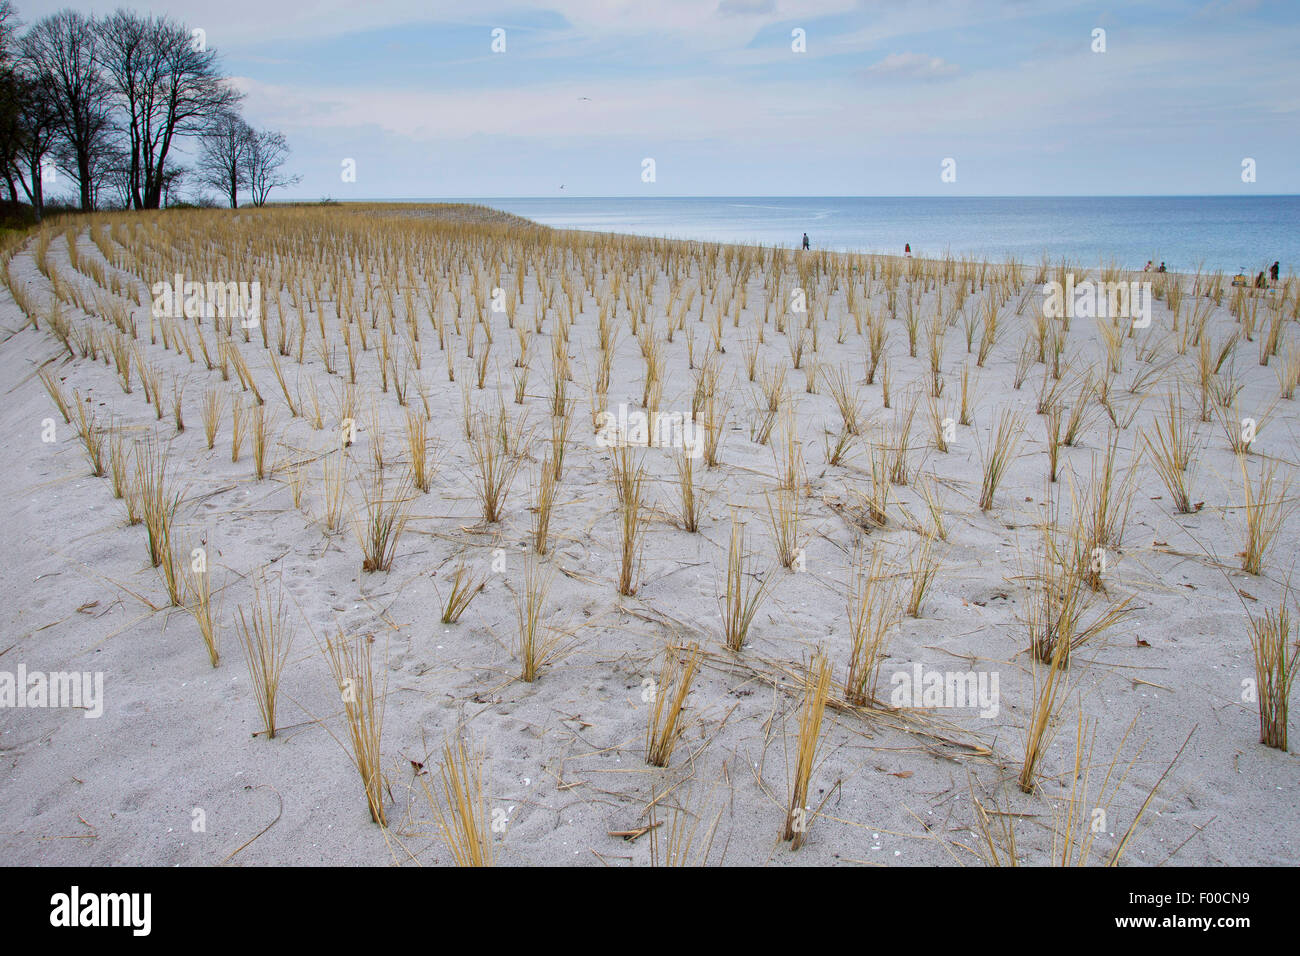 Plage de l'herbe, d'oyats européenne, l'ammophile, psamma, sable de mer-reed (Ammophila arenaria), plantation de végétation des dunes avec des herbes pour la protection de la côte de la plage, l'Allemagne, l'Boltenhagen Banque D'Images